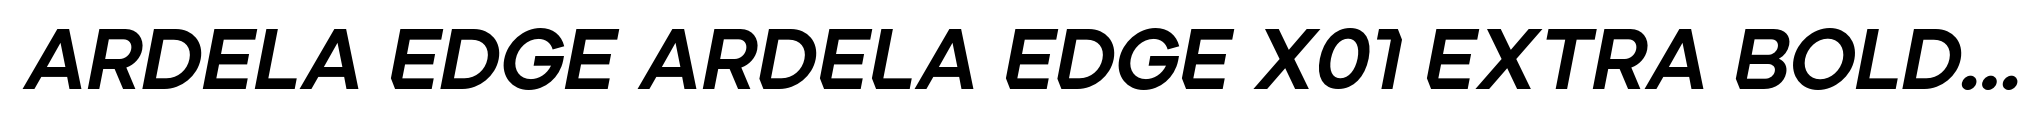 Ardela Edge ARDELA EDGE X01 Extra Bold Italic image